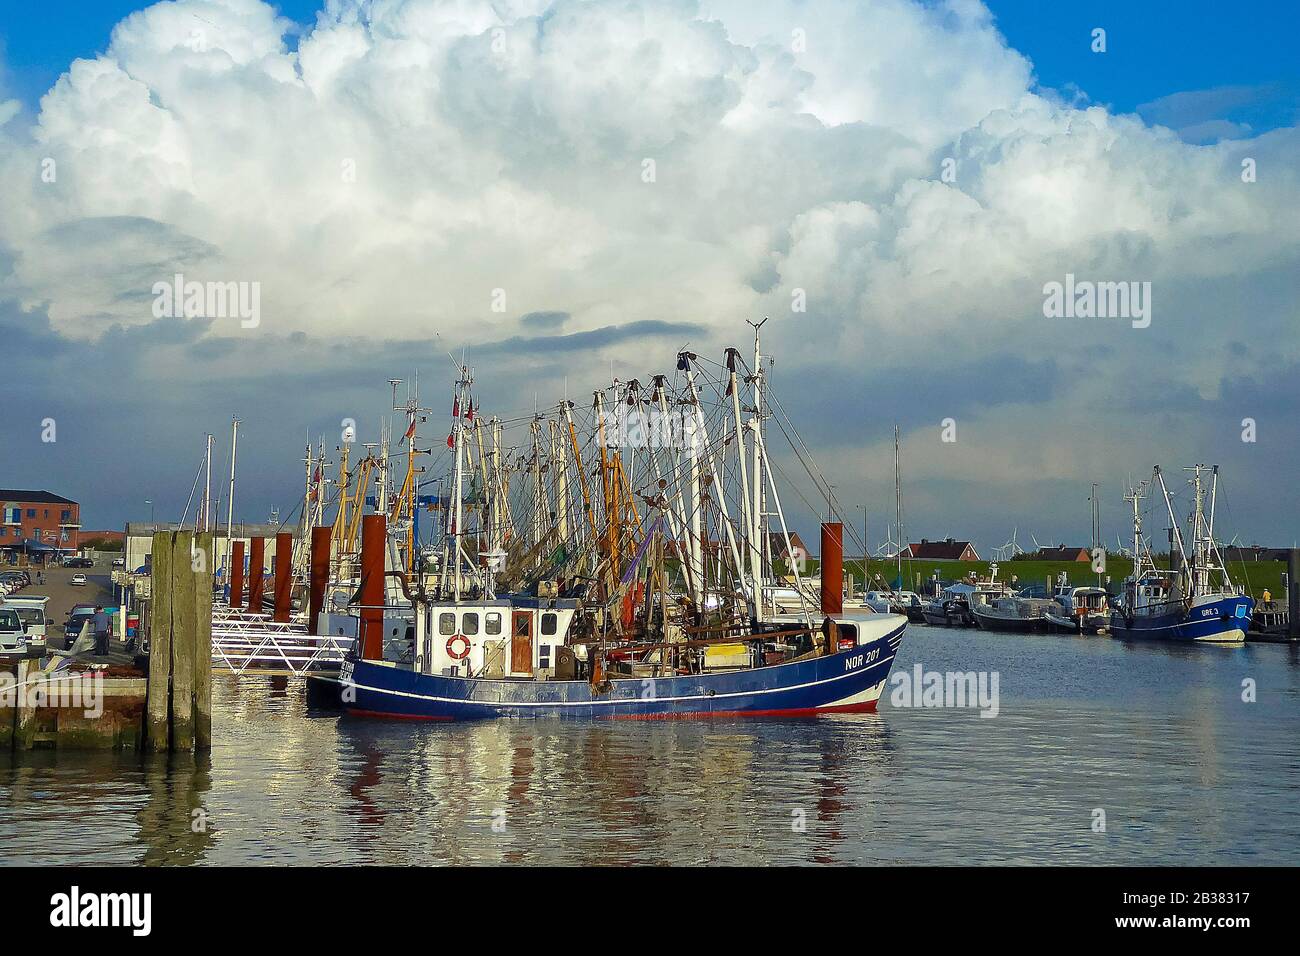 Quellwolken über dem Hafen von Norddeich, Ostfriesland, Fischerboote, Krabbenkutter, Foto Stock